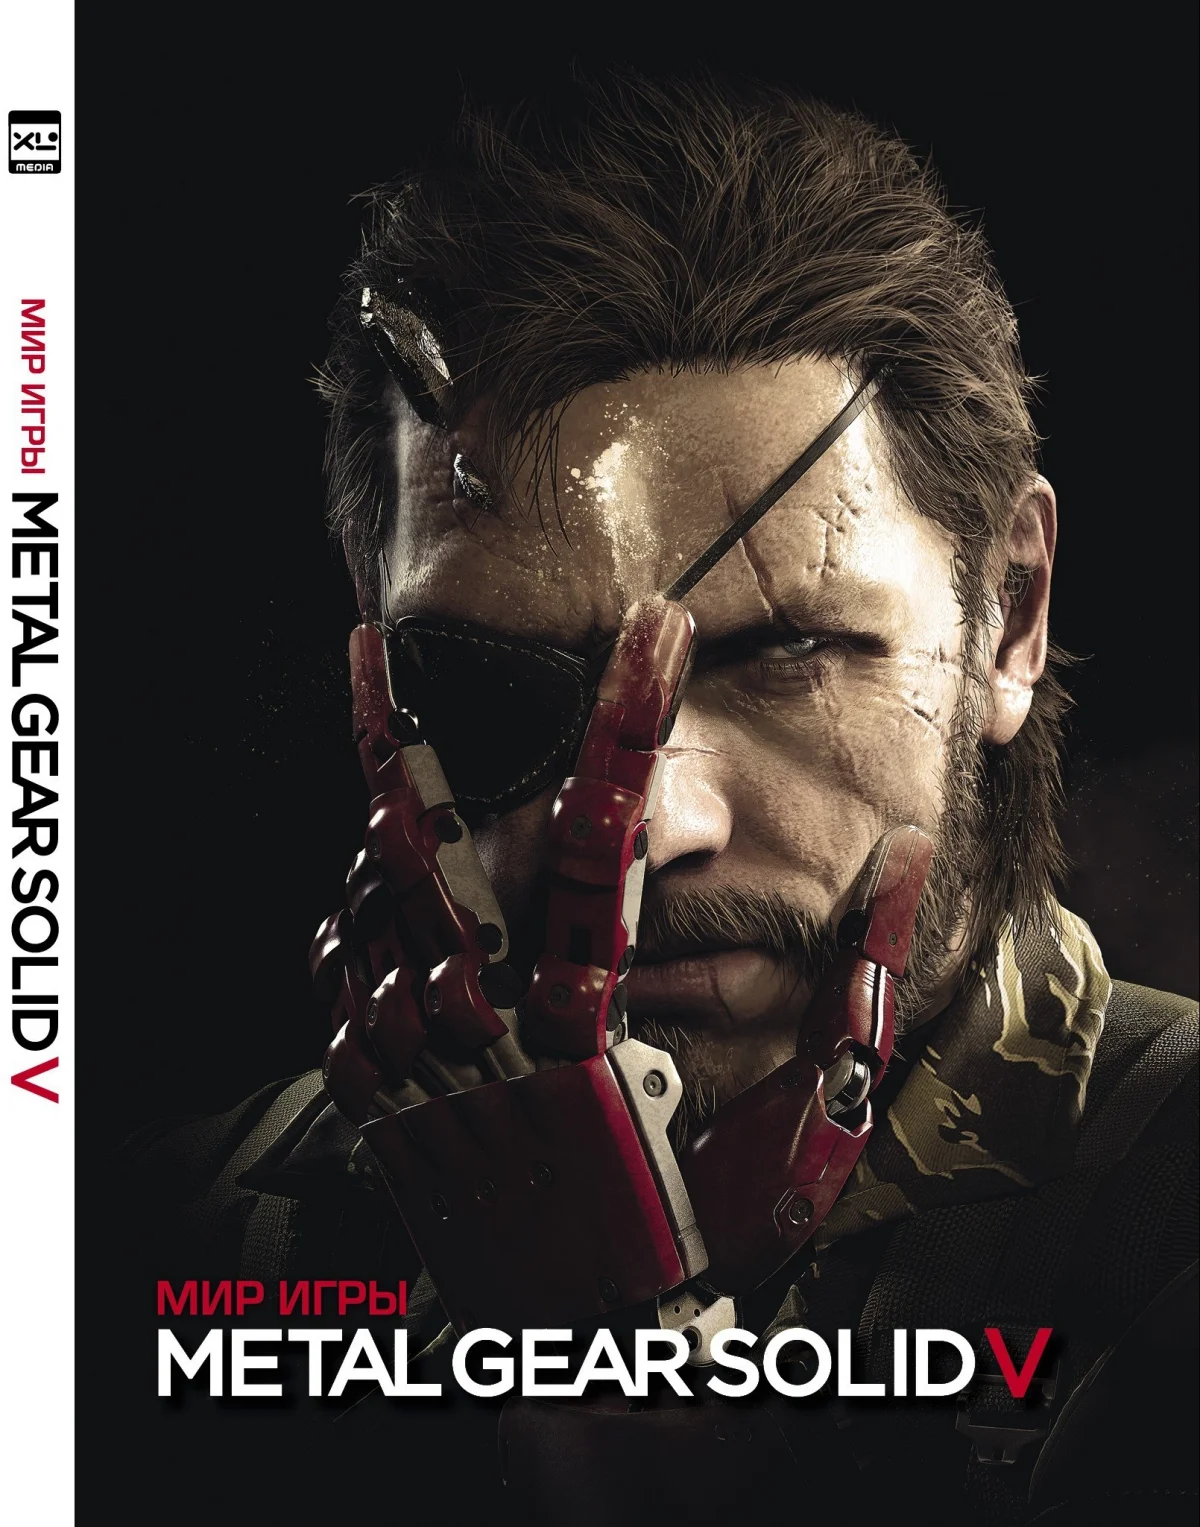 Российское издание артбука «Мир игры Metal Gear Solid V» задержится из-за Konami - фото 1